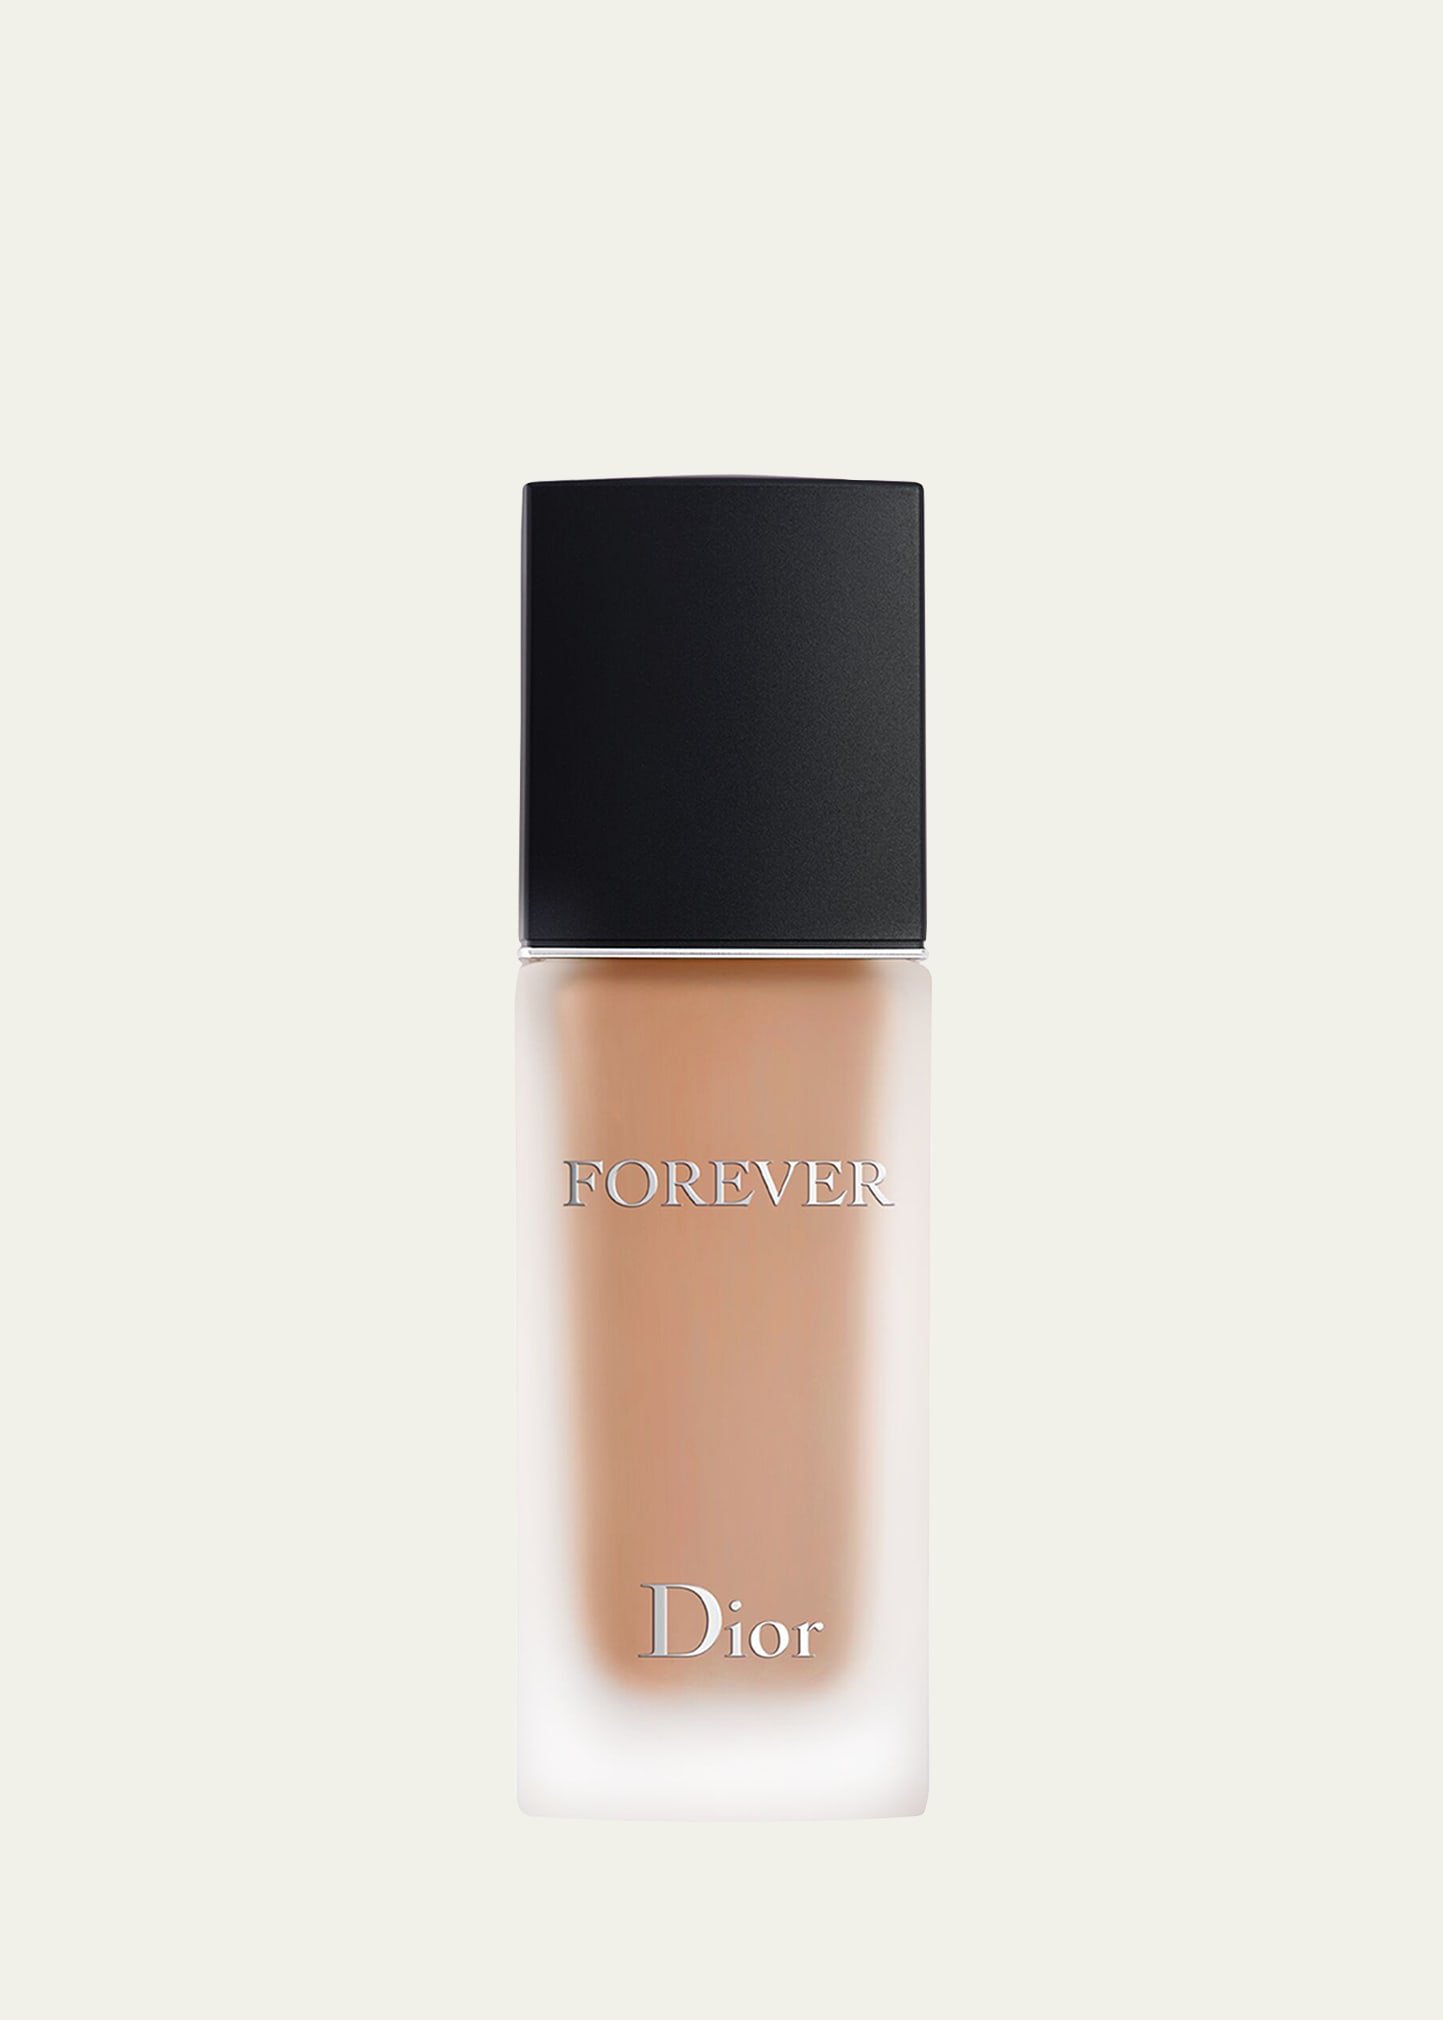 Dior 1 Oz. Forever Matte Skincare Foundation Spf 15 In 3 Warm Peach